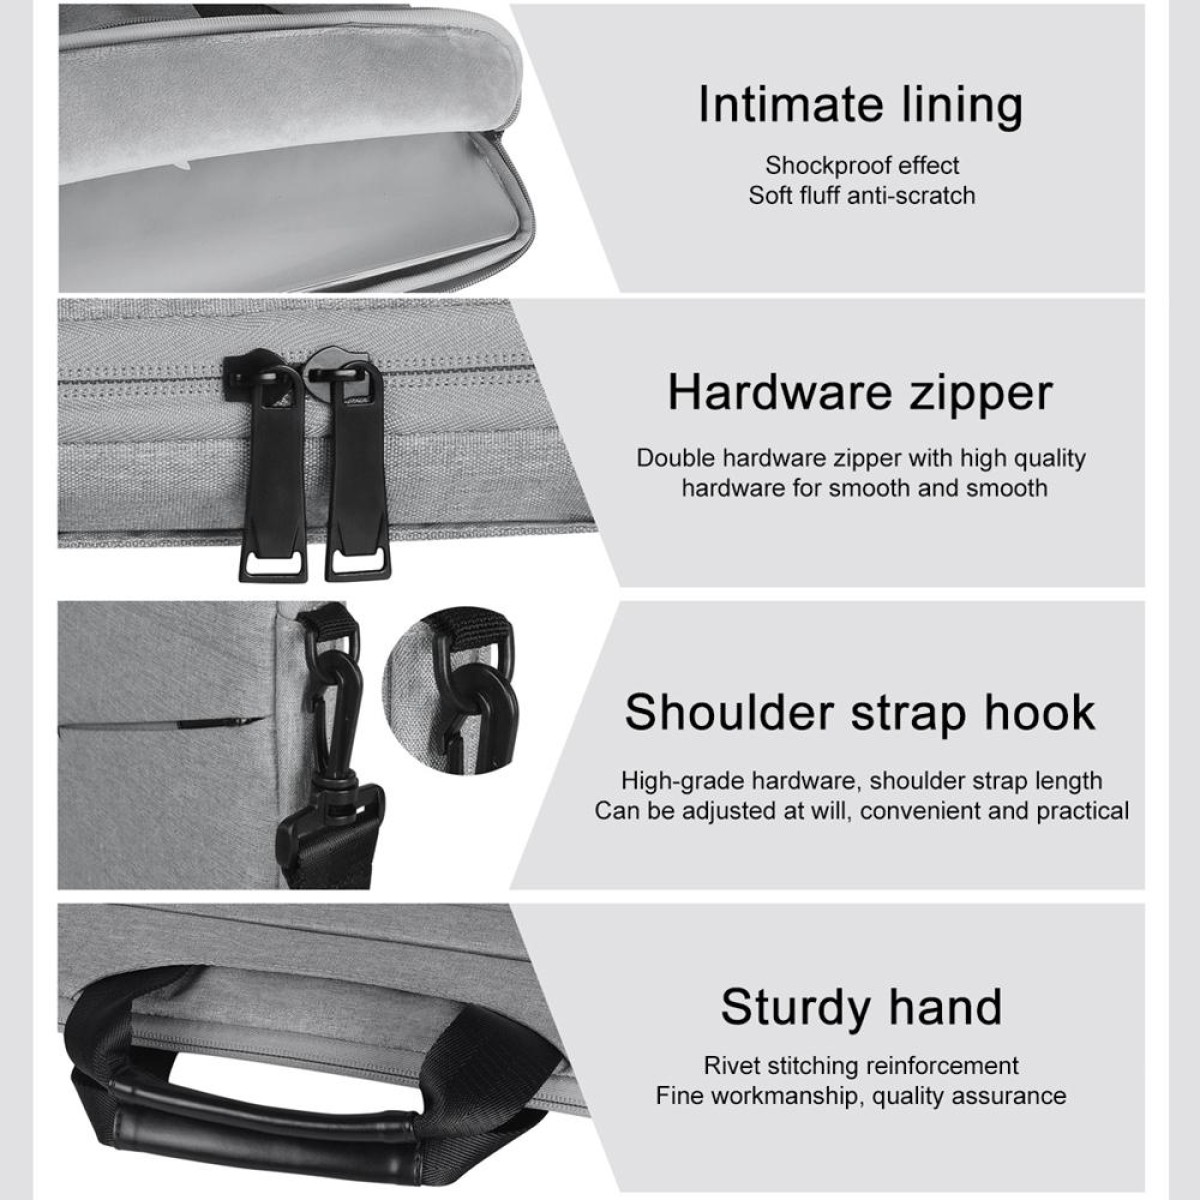 14.1 inch Breathable Wear-resistant Fashion Business Shoulder Handheld Zipper Laptop Bag with Shoulder Strap (Light Grey)